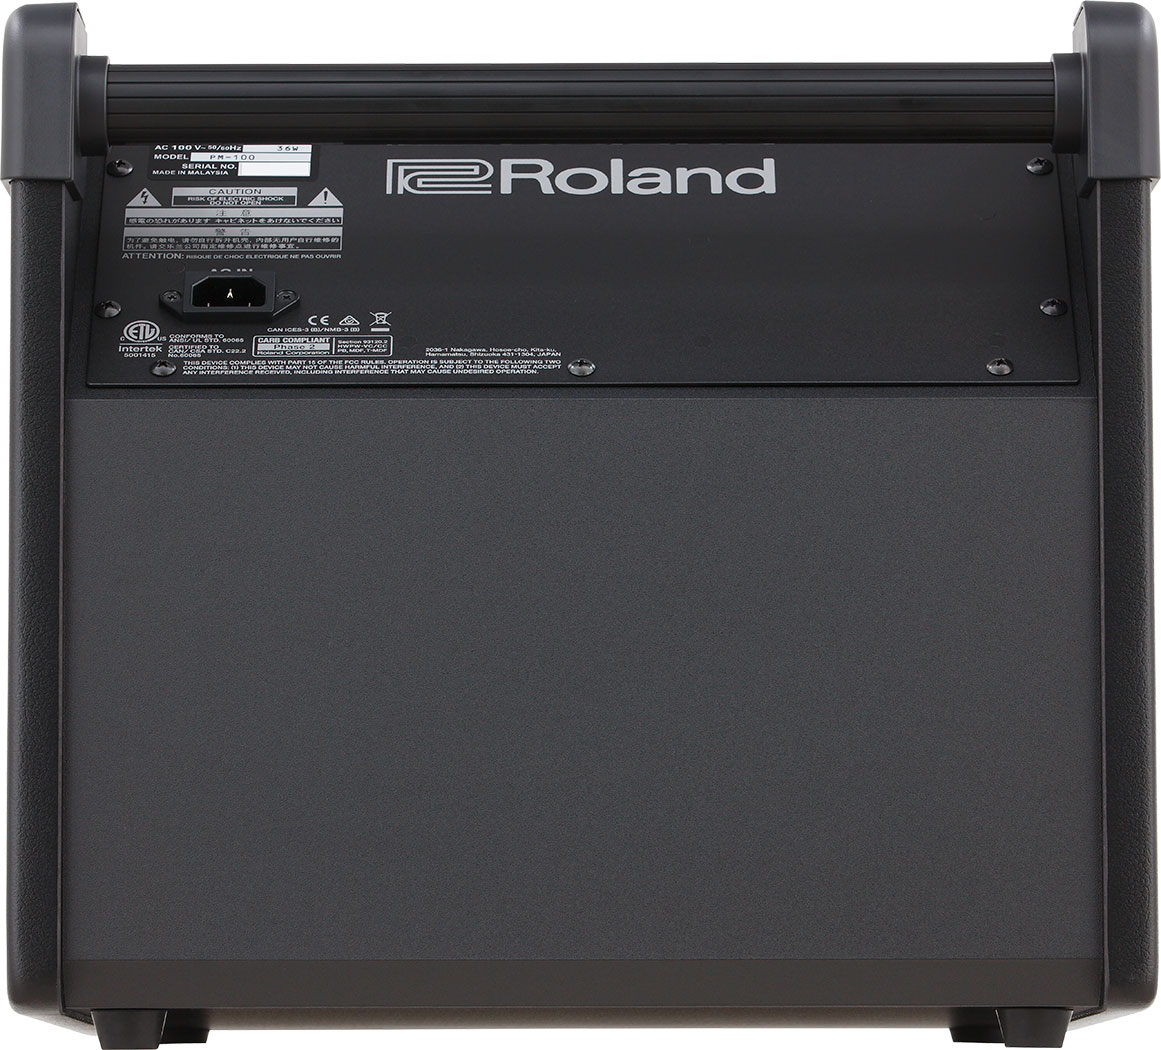 Roland Pm-100 - Sistema de amplificación para batería electrónica - Variation 2